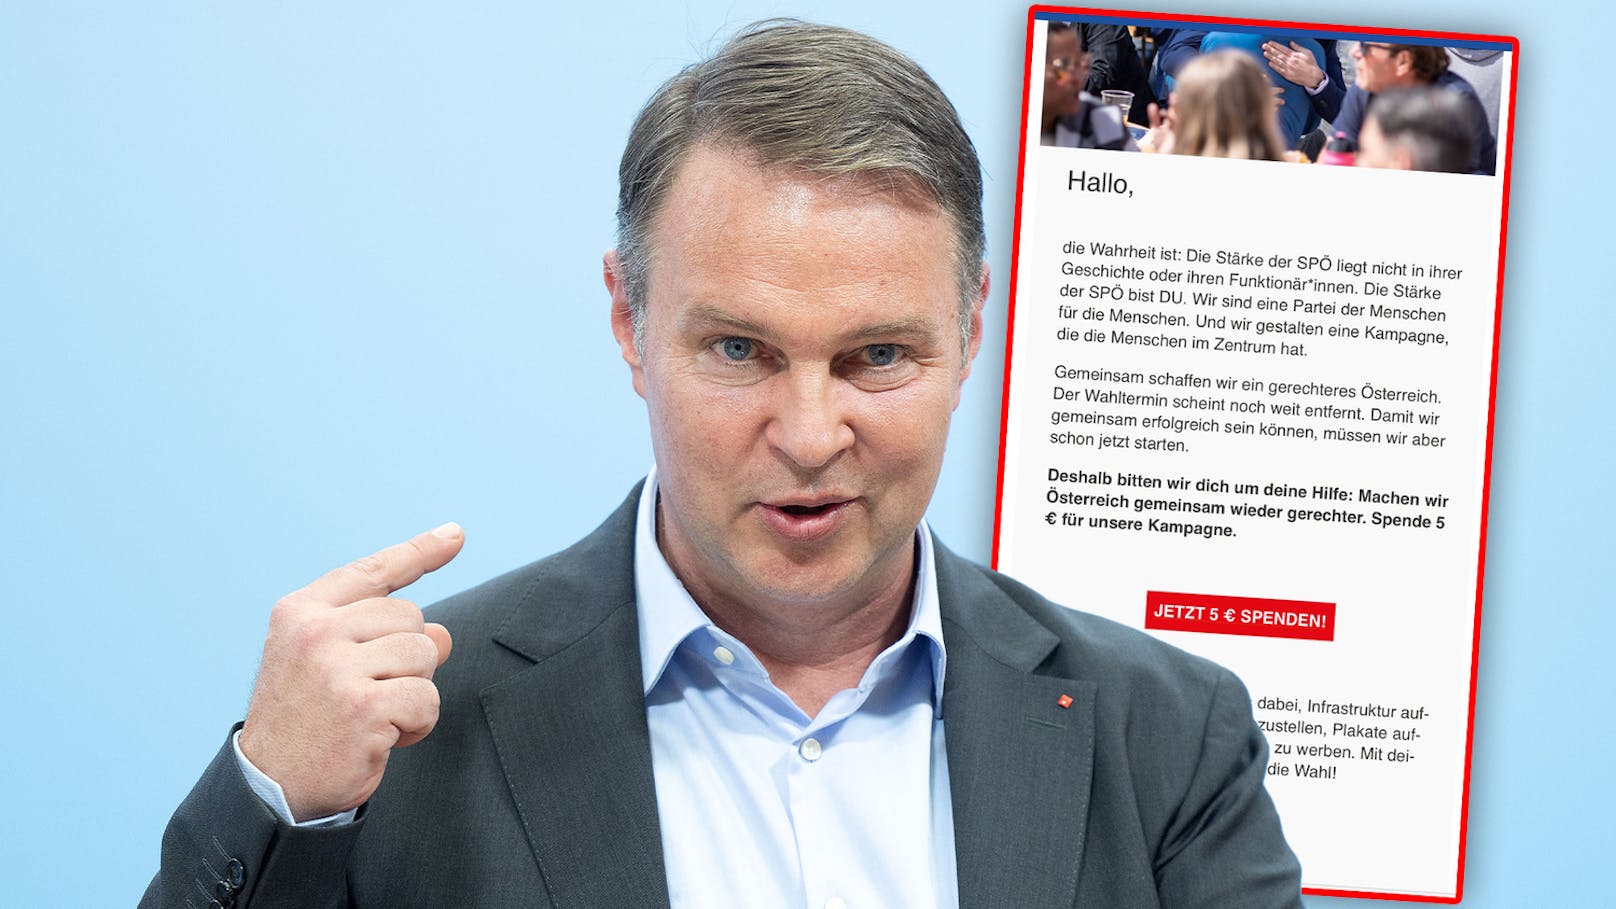 Mitglieder sollen zahlen – SPÖ bittet jetzt um Spenden